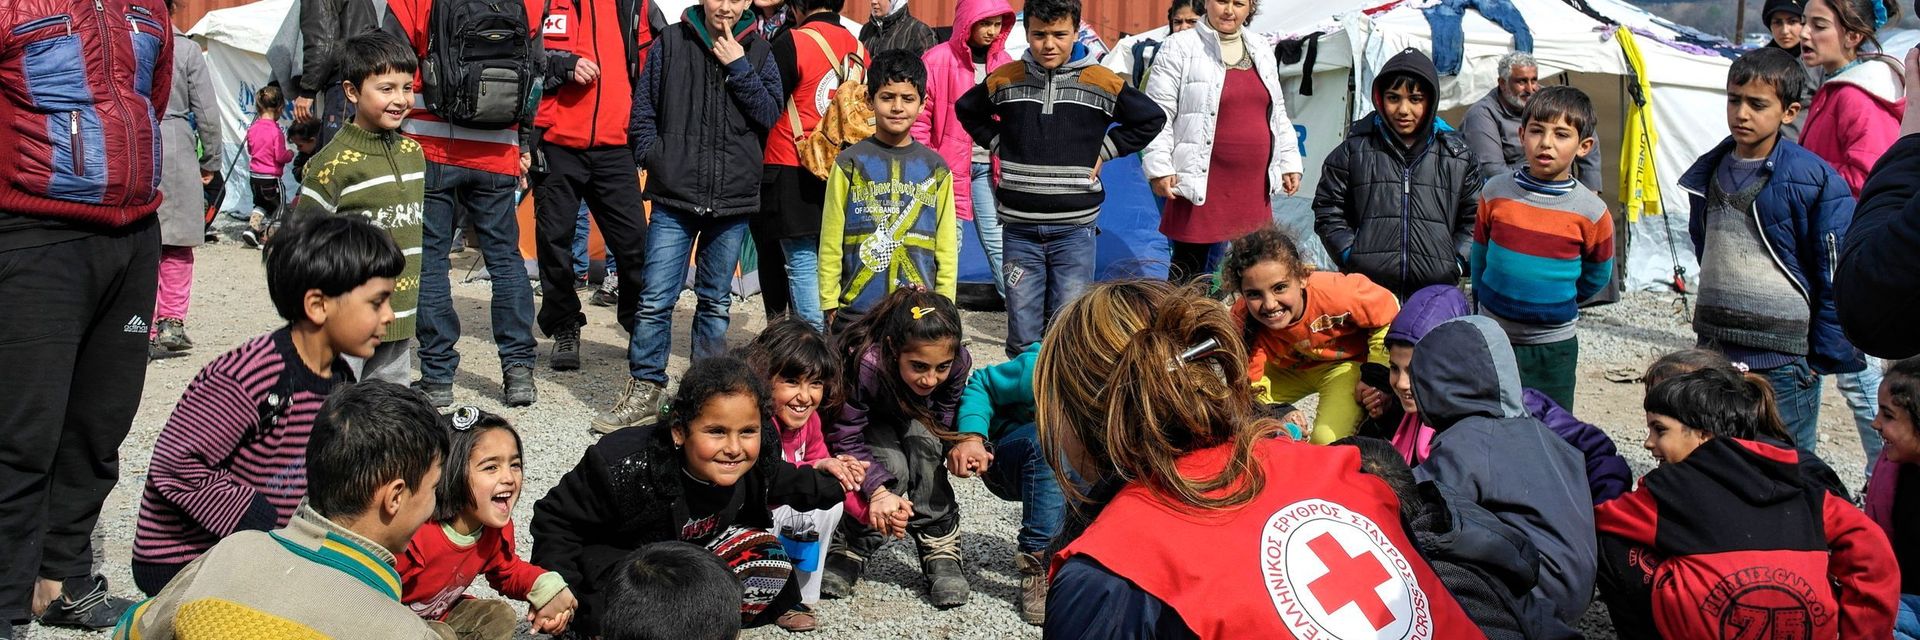 Flüchtlingskinder im griechischen Lager Idomeni